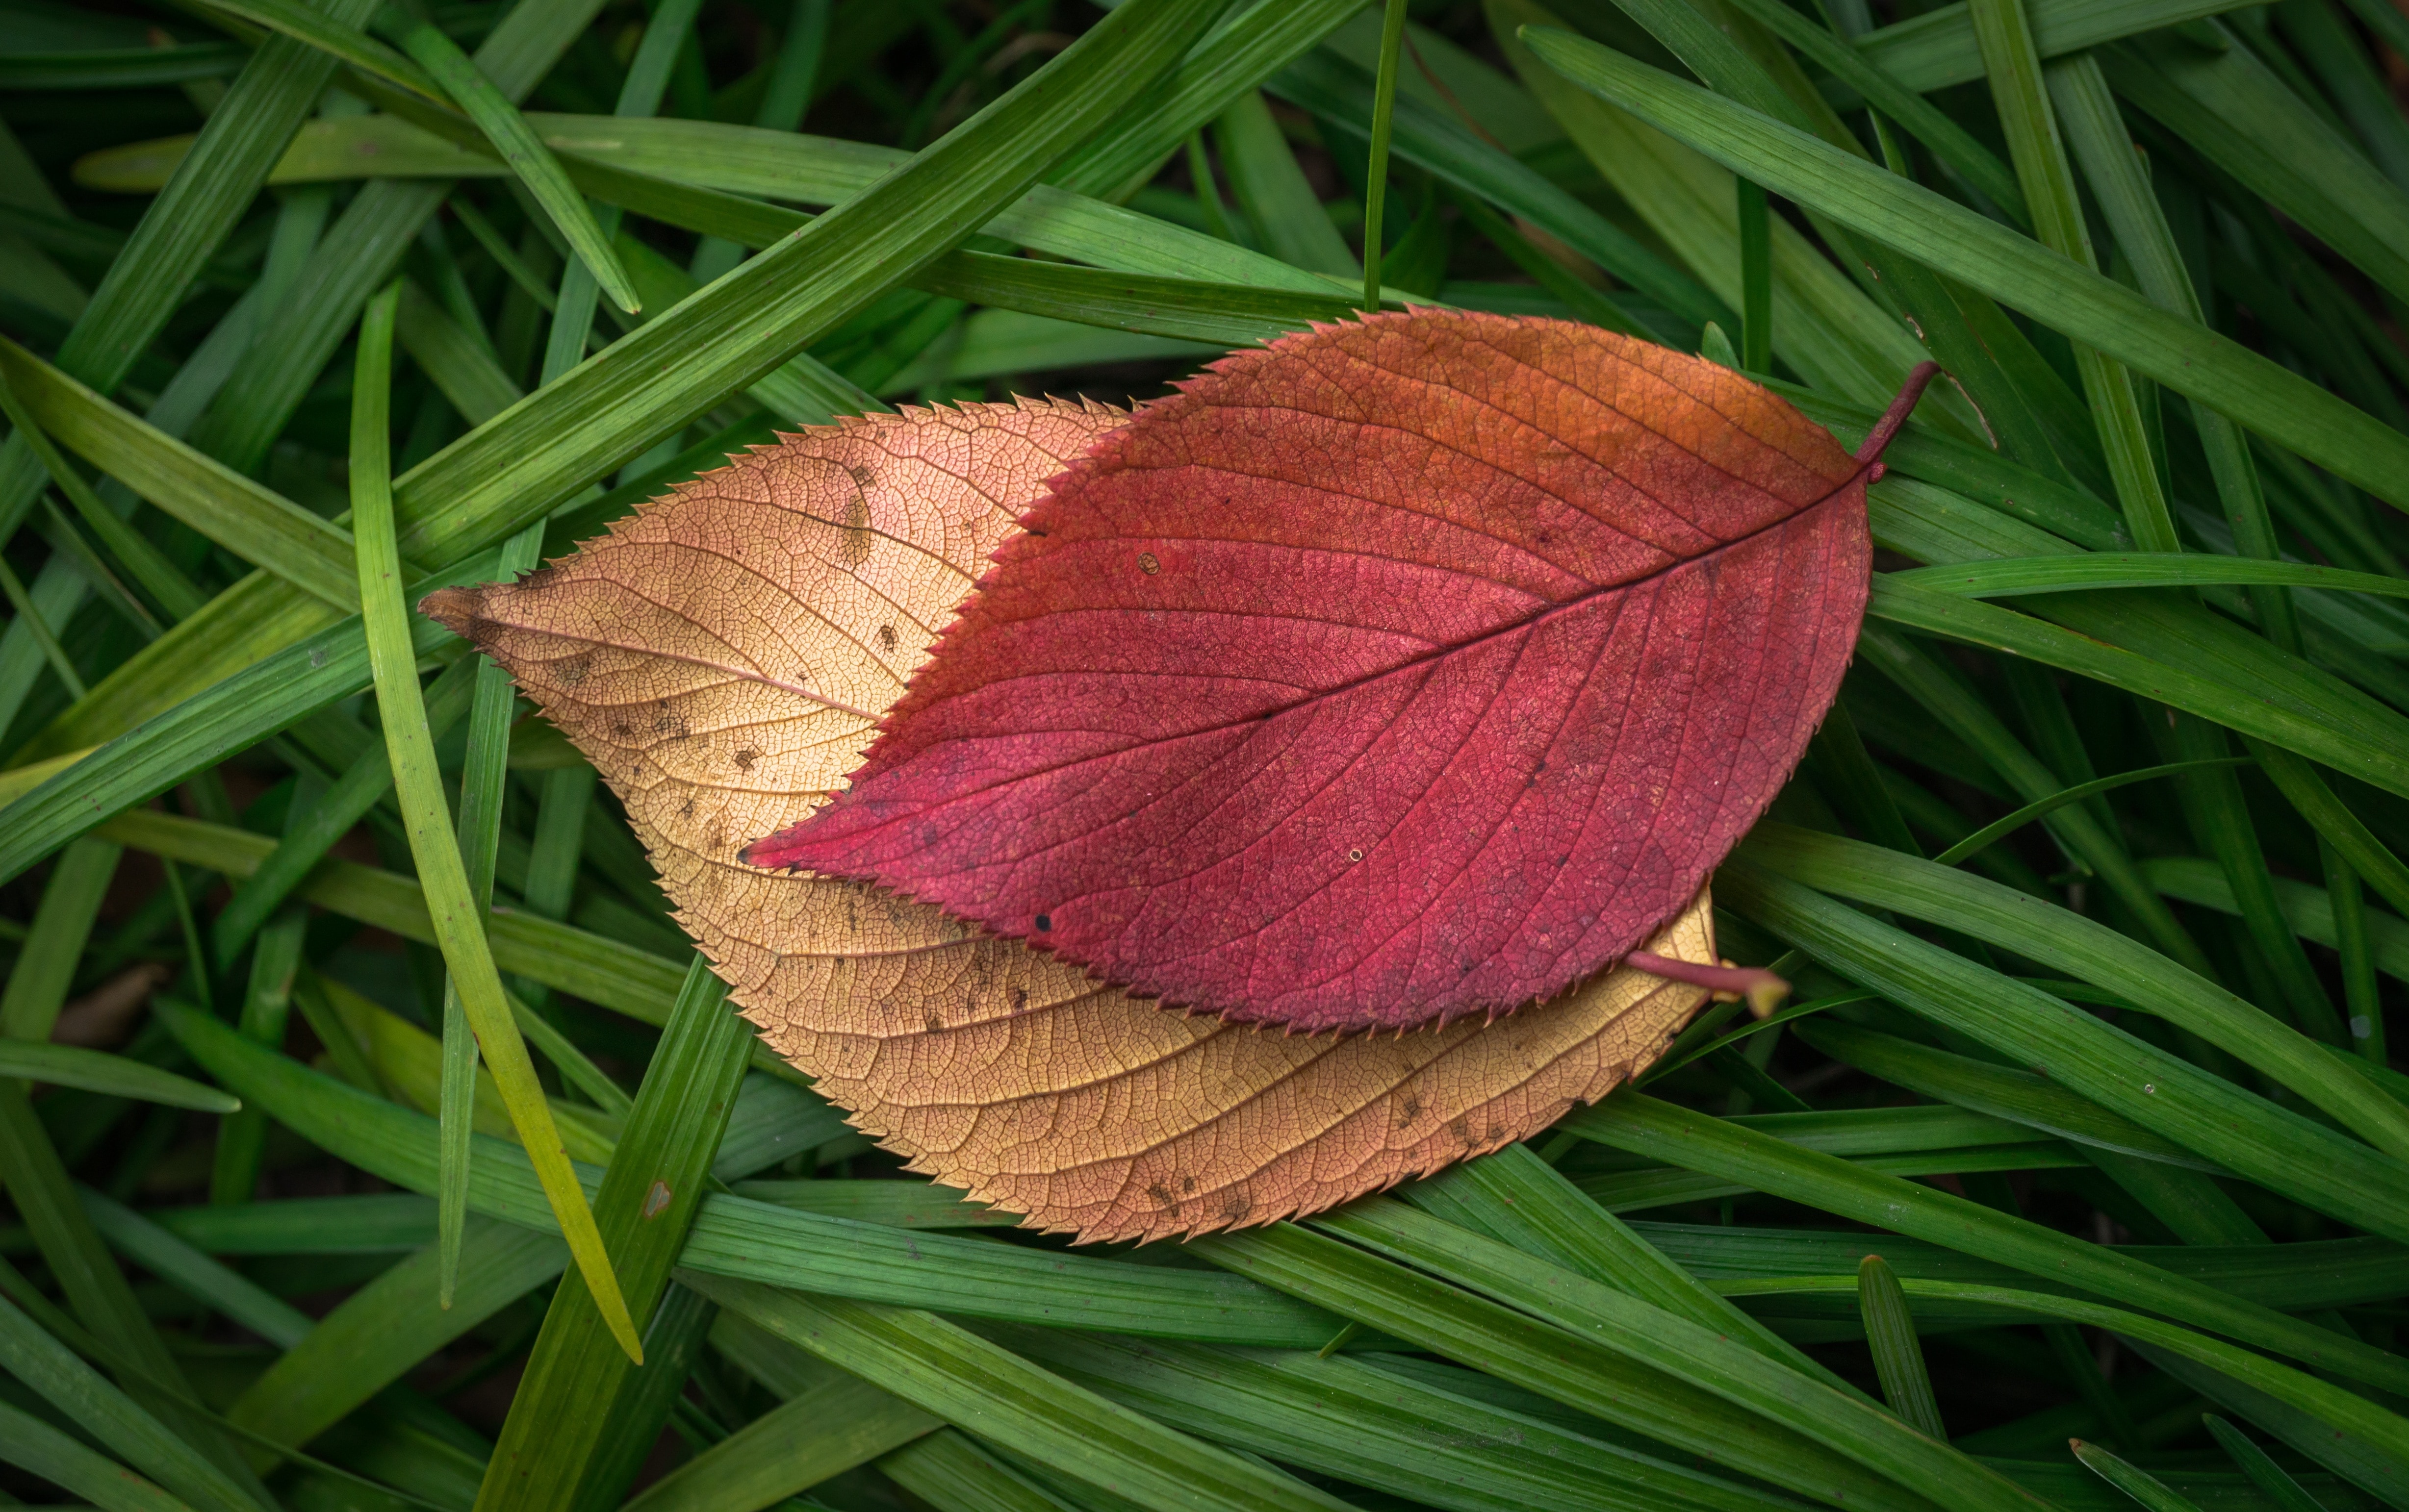 tilted plant's leaf